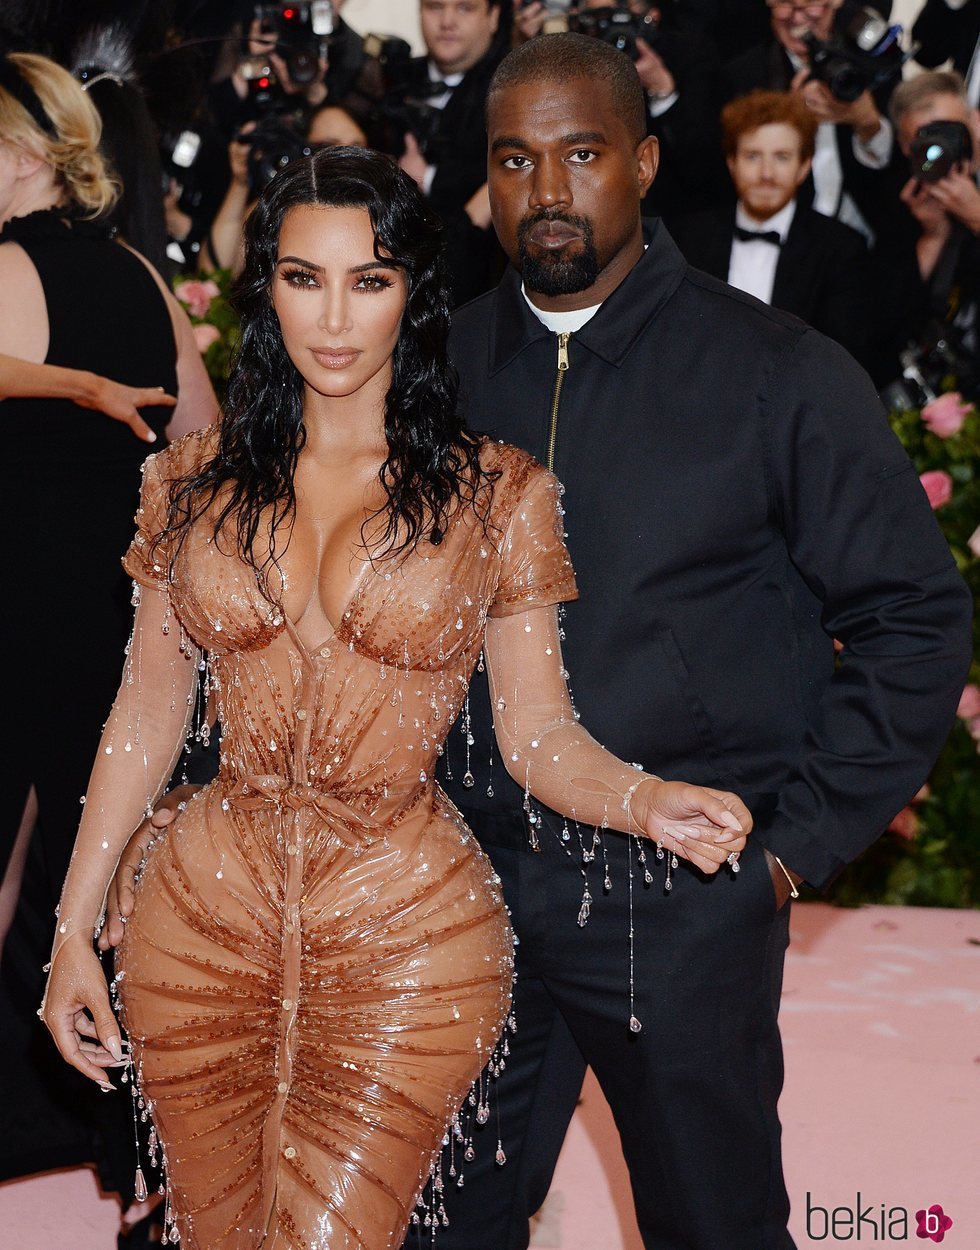 Kim Kardashian y Kanye West en la alfombra roja de la Gala MET 2019